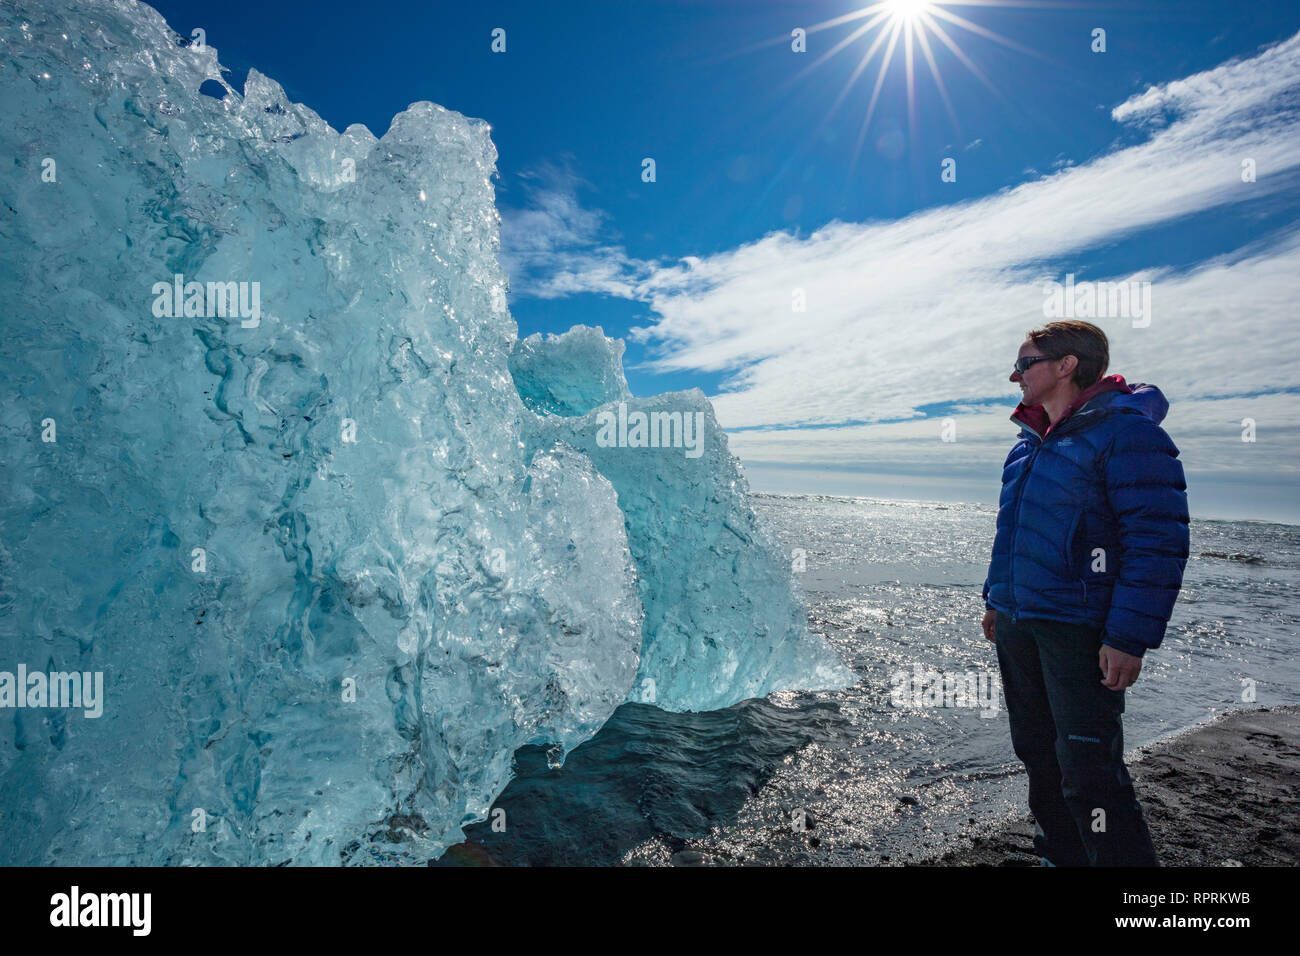 Personne examinant un iceberg sur Breidamerkursandur plage de sable noir, sous Jokulsarlon. Sudhurland, au sud est de l'Islande. Banque D'Images